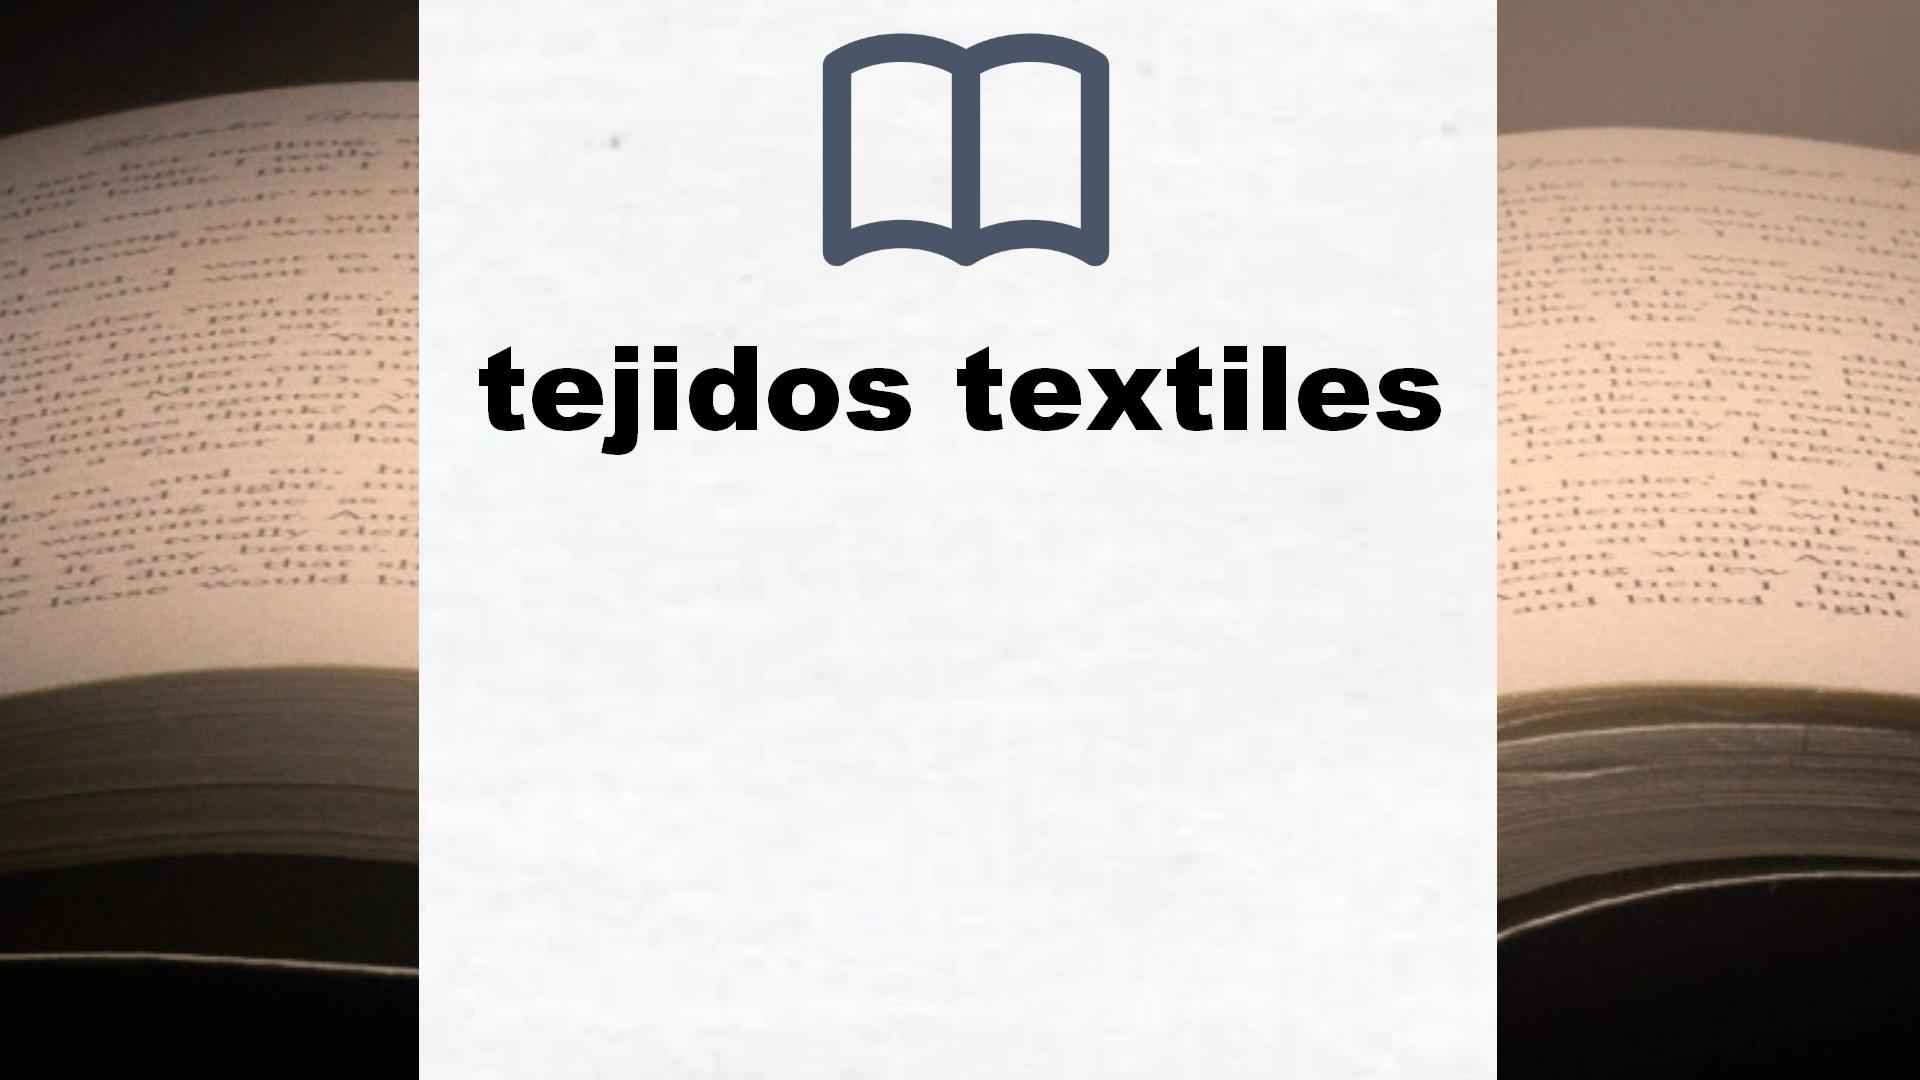 Libros sobre tejidos textiles